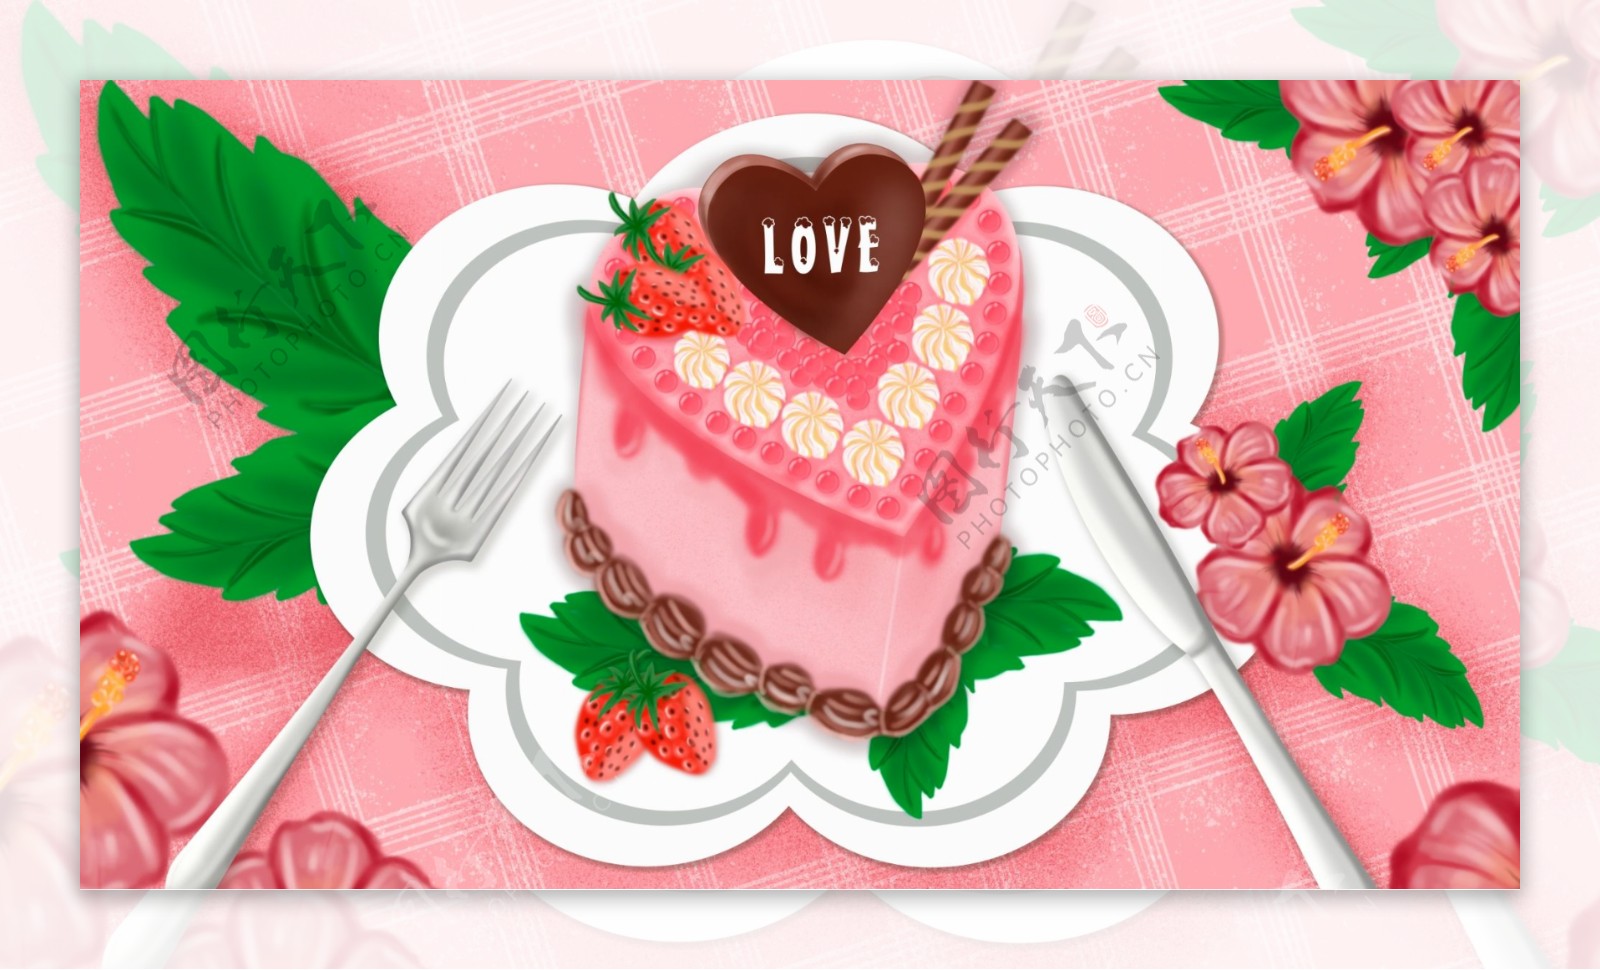 下午茶甜品草莓蛋糕插画